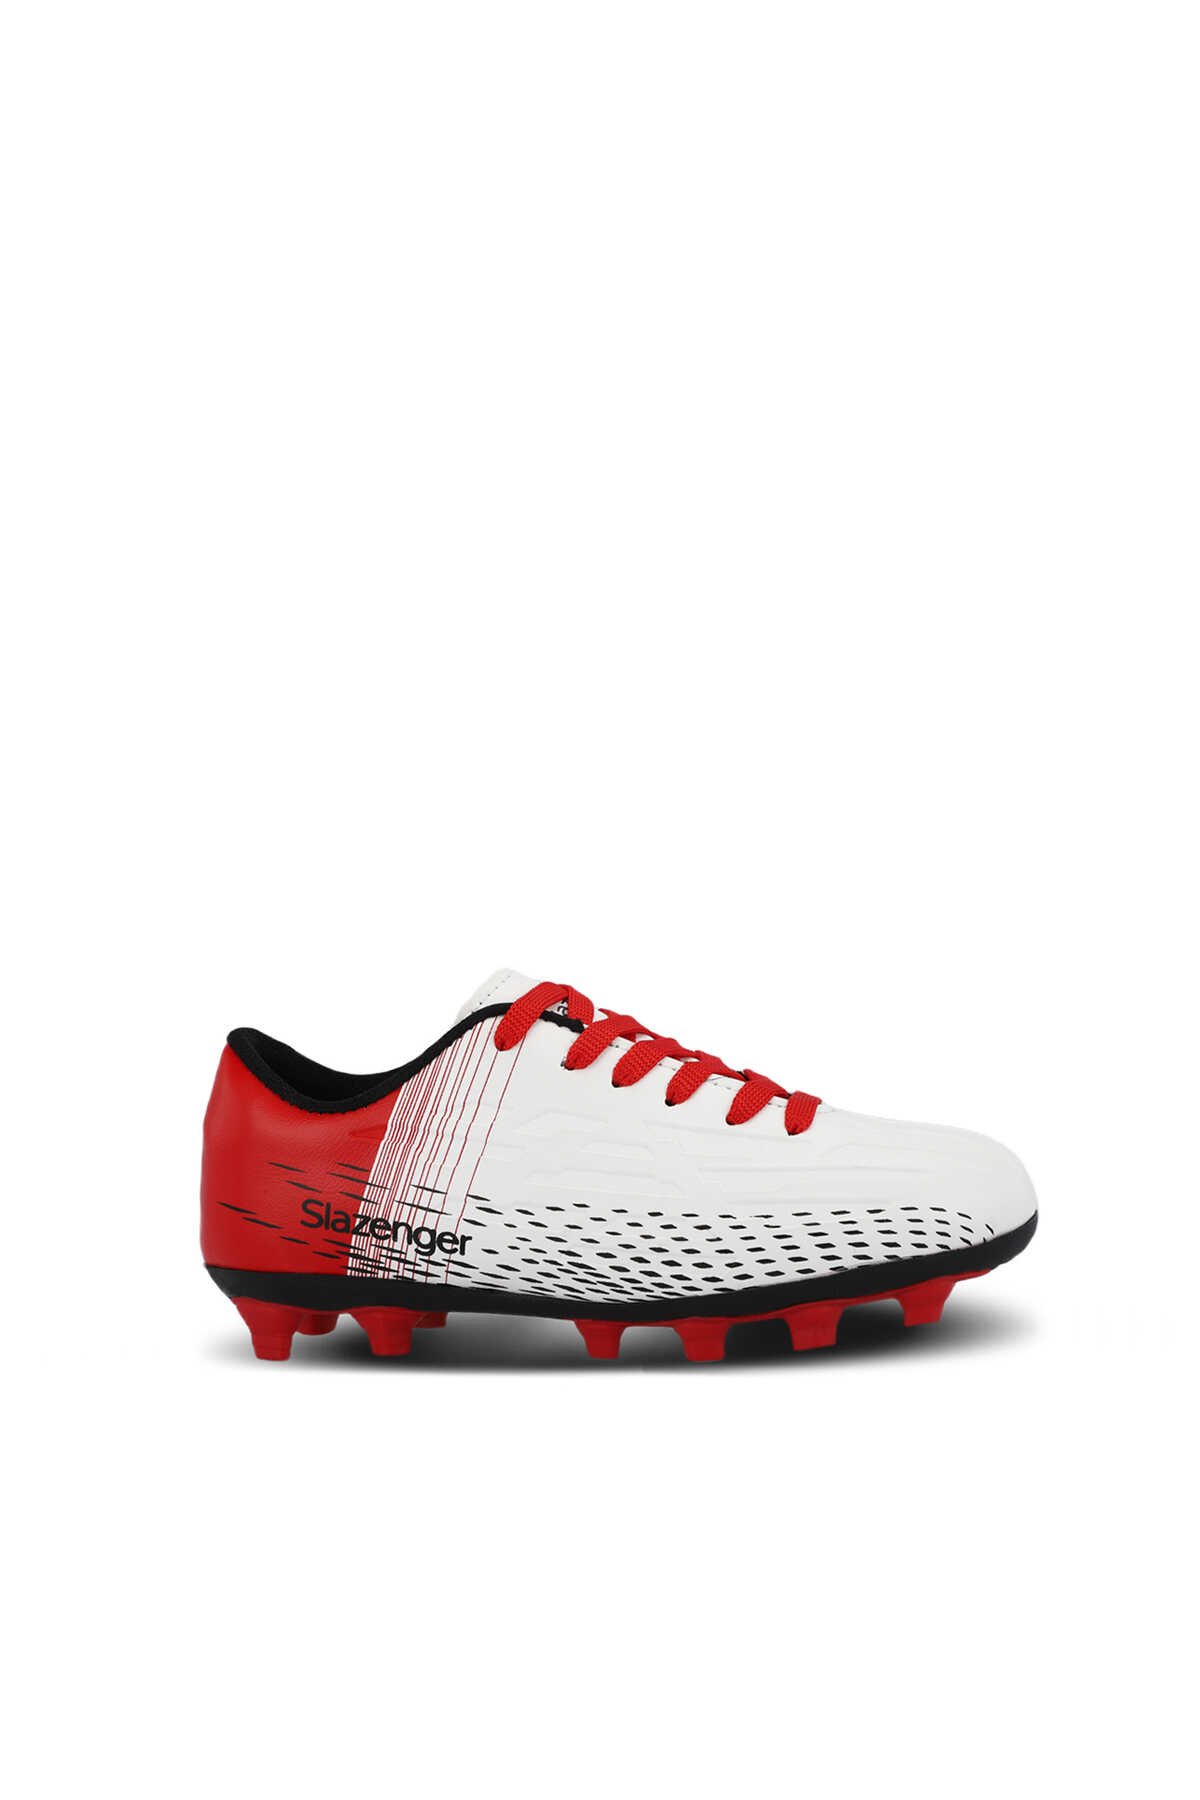 Slazenger - Slazenger SCORE I KRP Futbol Erkek Çocuk Krampon Ayakkabı Beyaz / Kırmızı